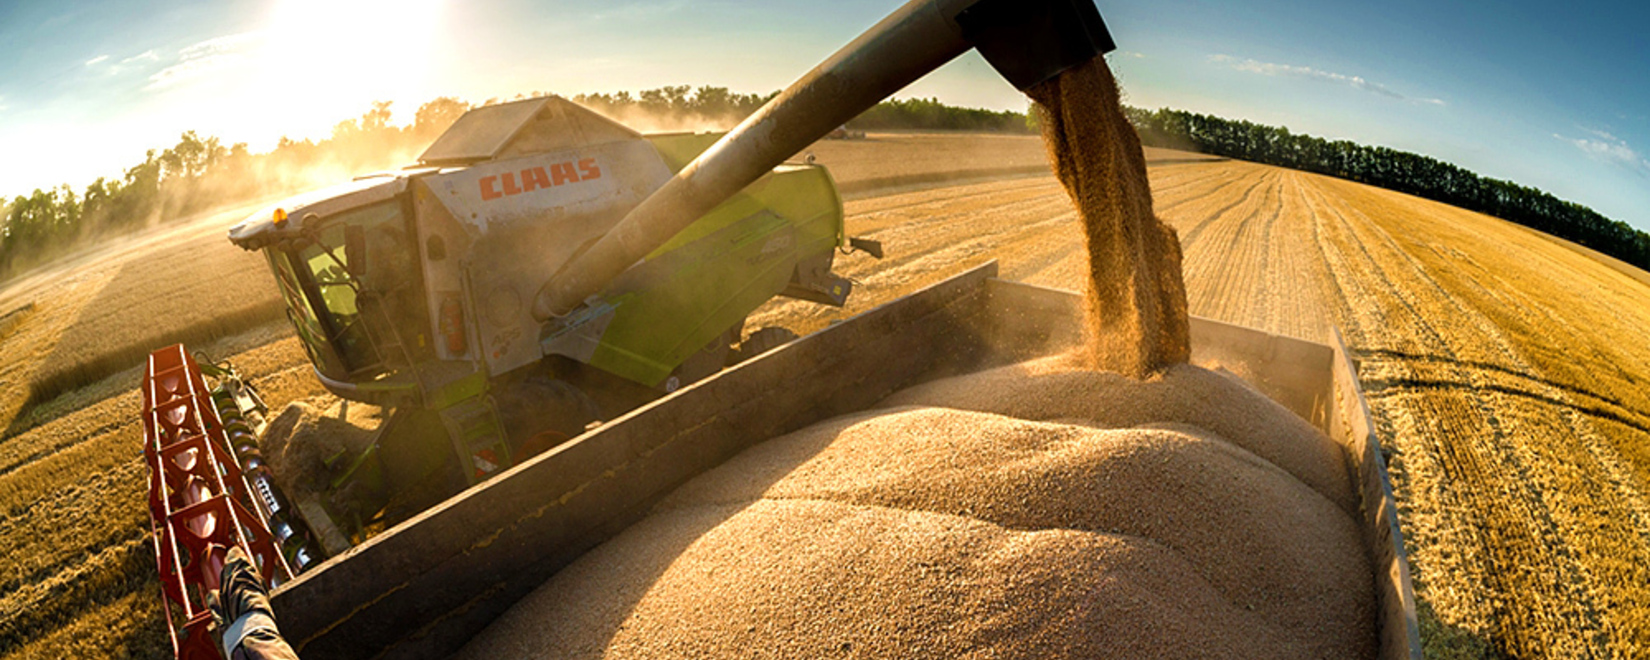 Экспорт зерна и зернобобовых, включая муку, в текущем сельхозгоду может достичь рекордного объёма в 60,5 млн тонн